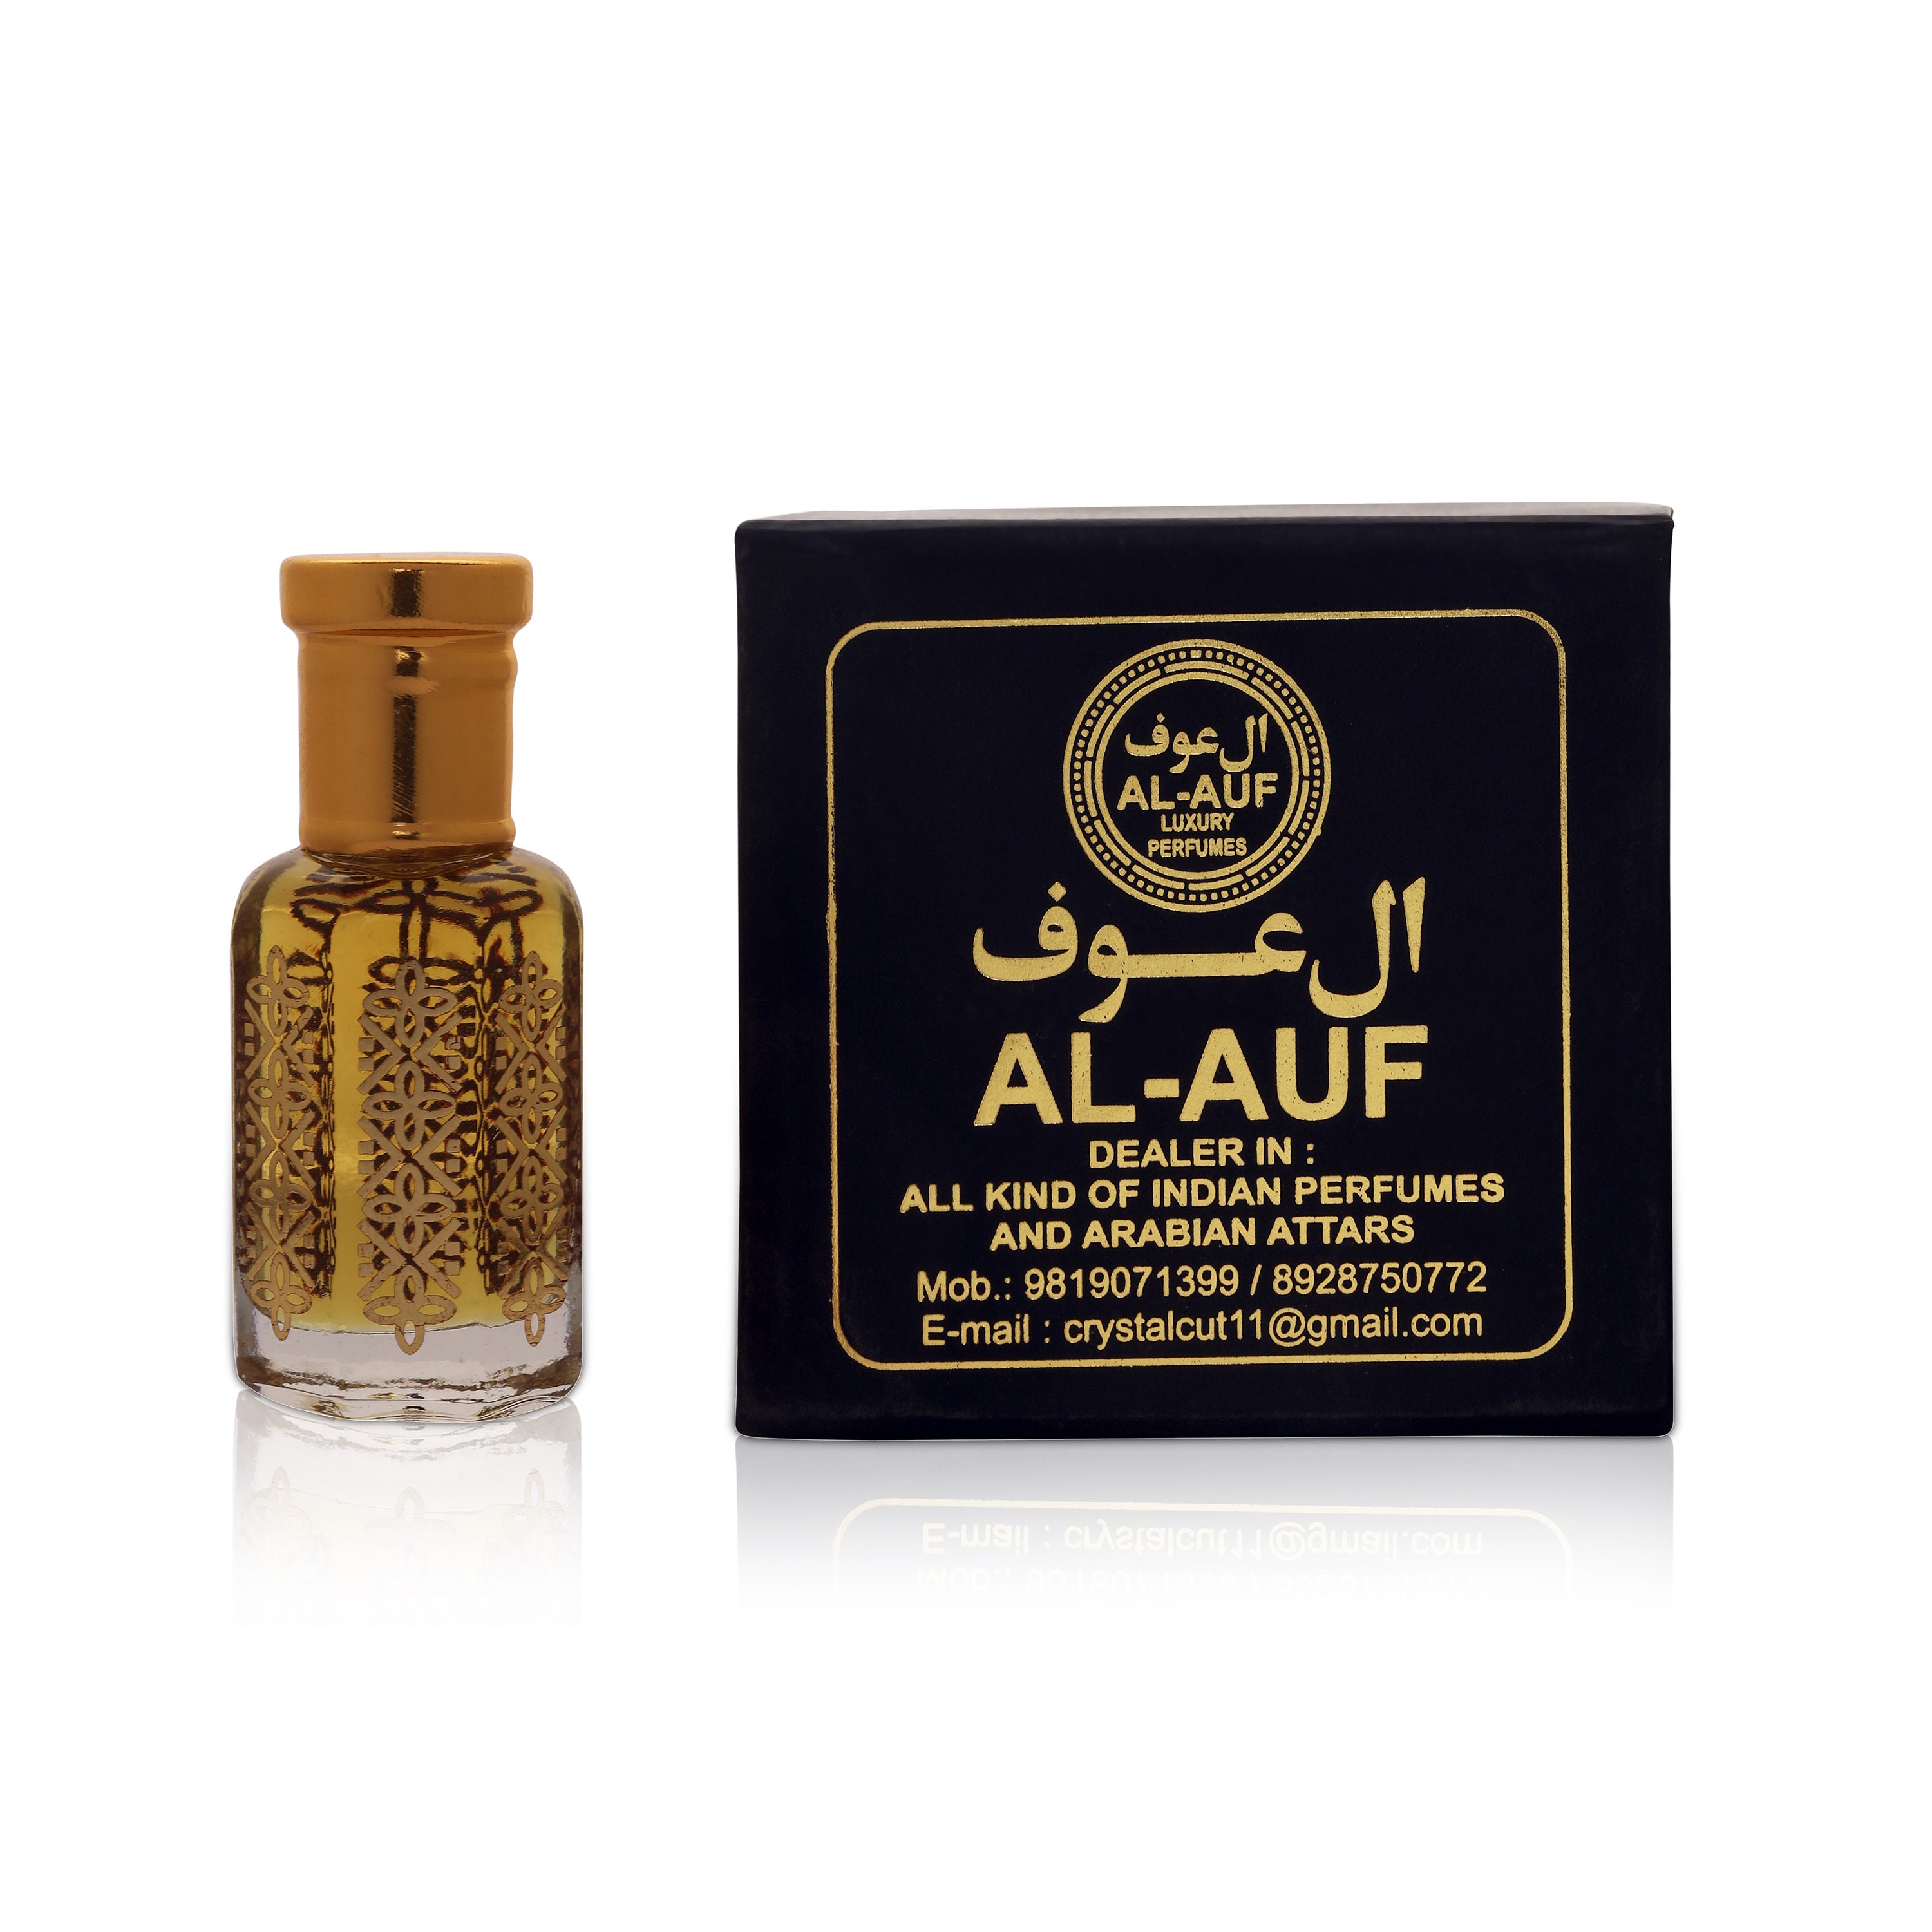 Black Oud Oudh Perfume Oil Attar by AL-AUF Alcohol-free 